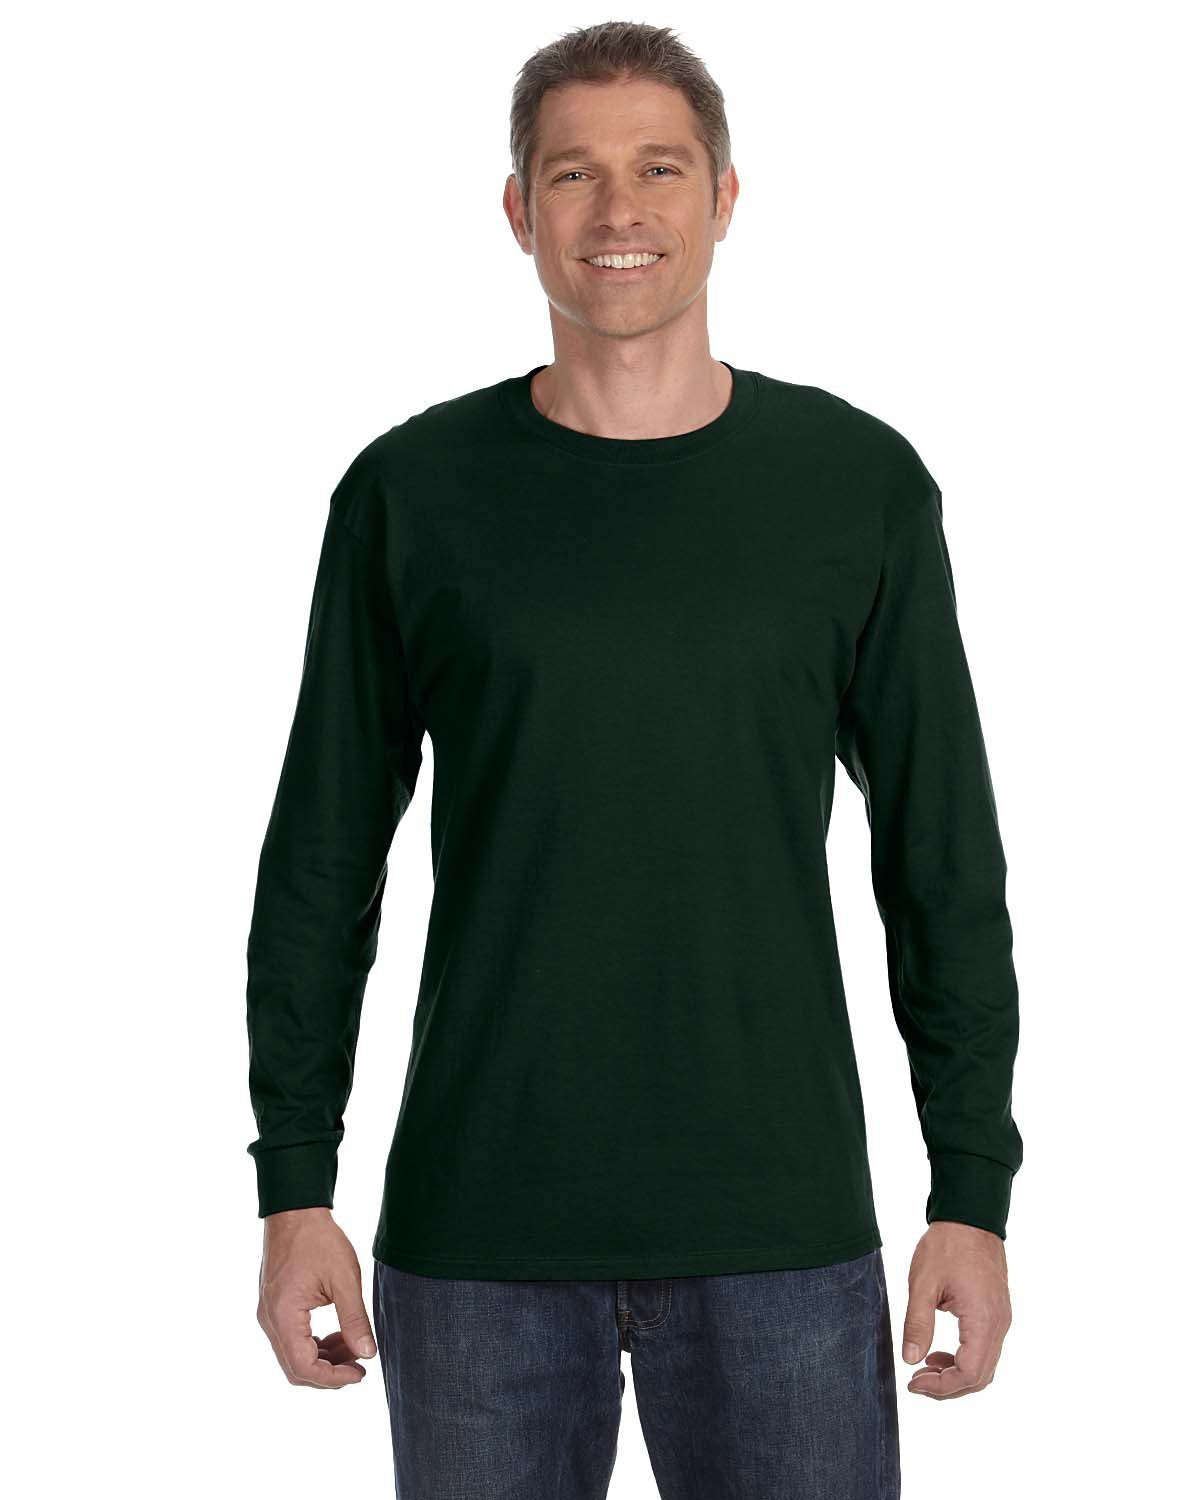 Gildan Adult Heavy Cotton Long-Sleeve T-Shirt #5400 Forest Green